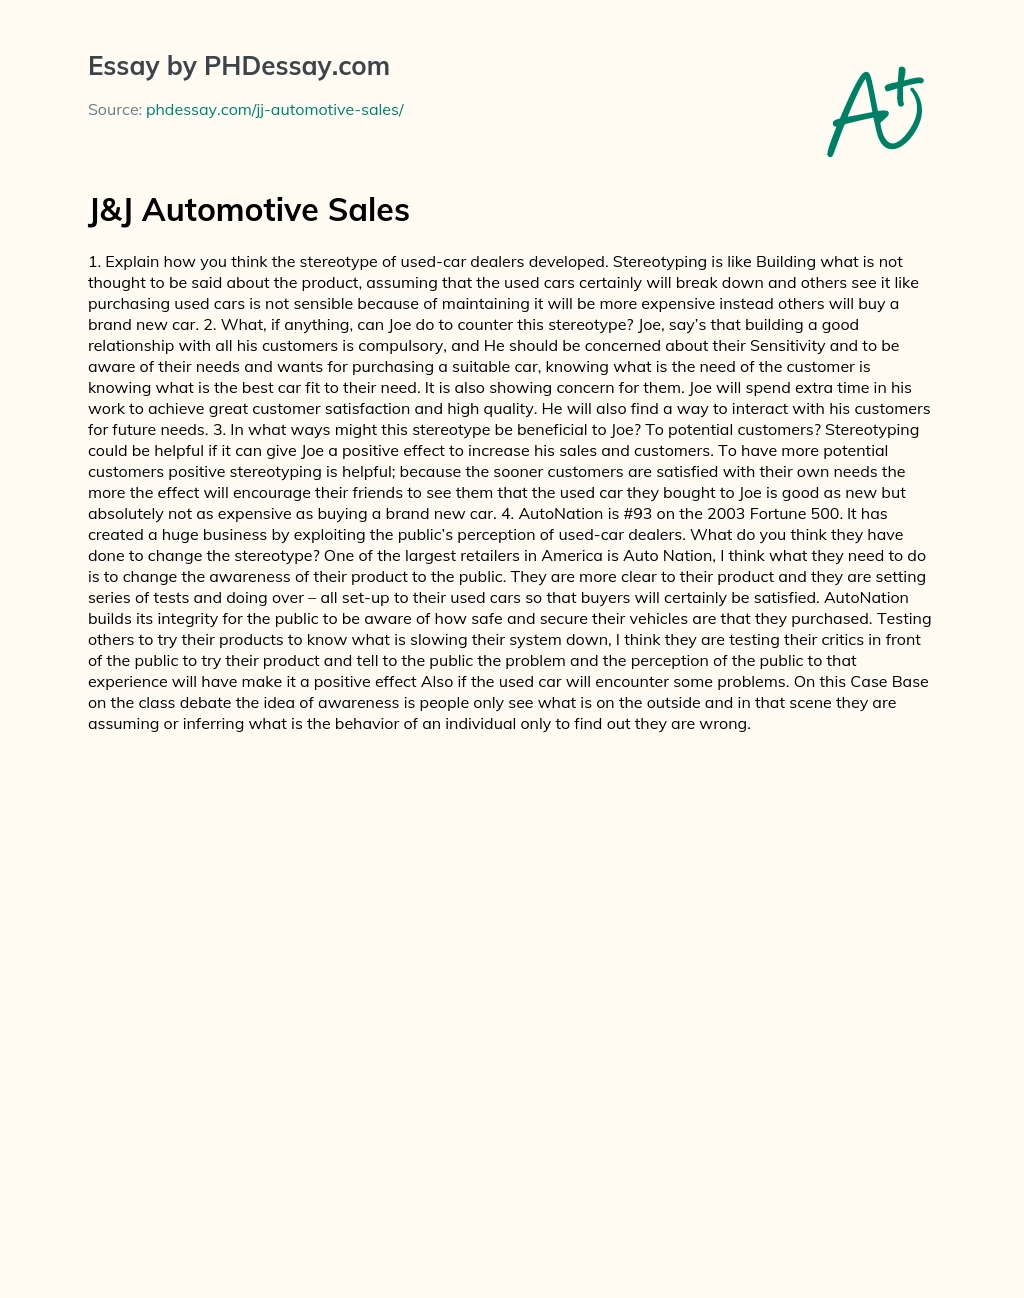 J&J Automotive Sales essay